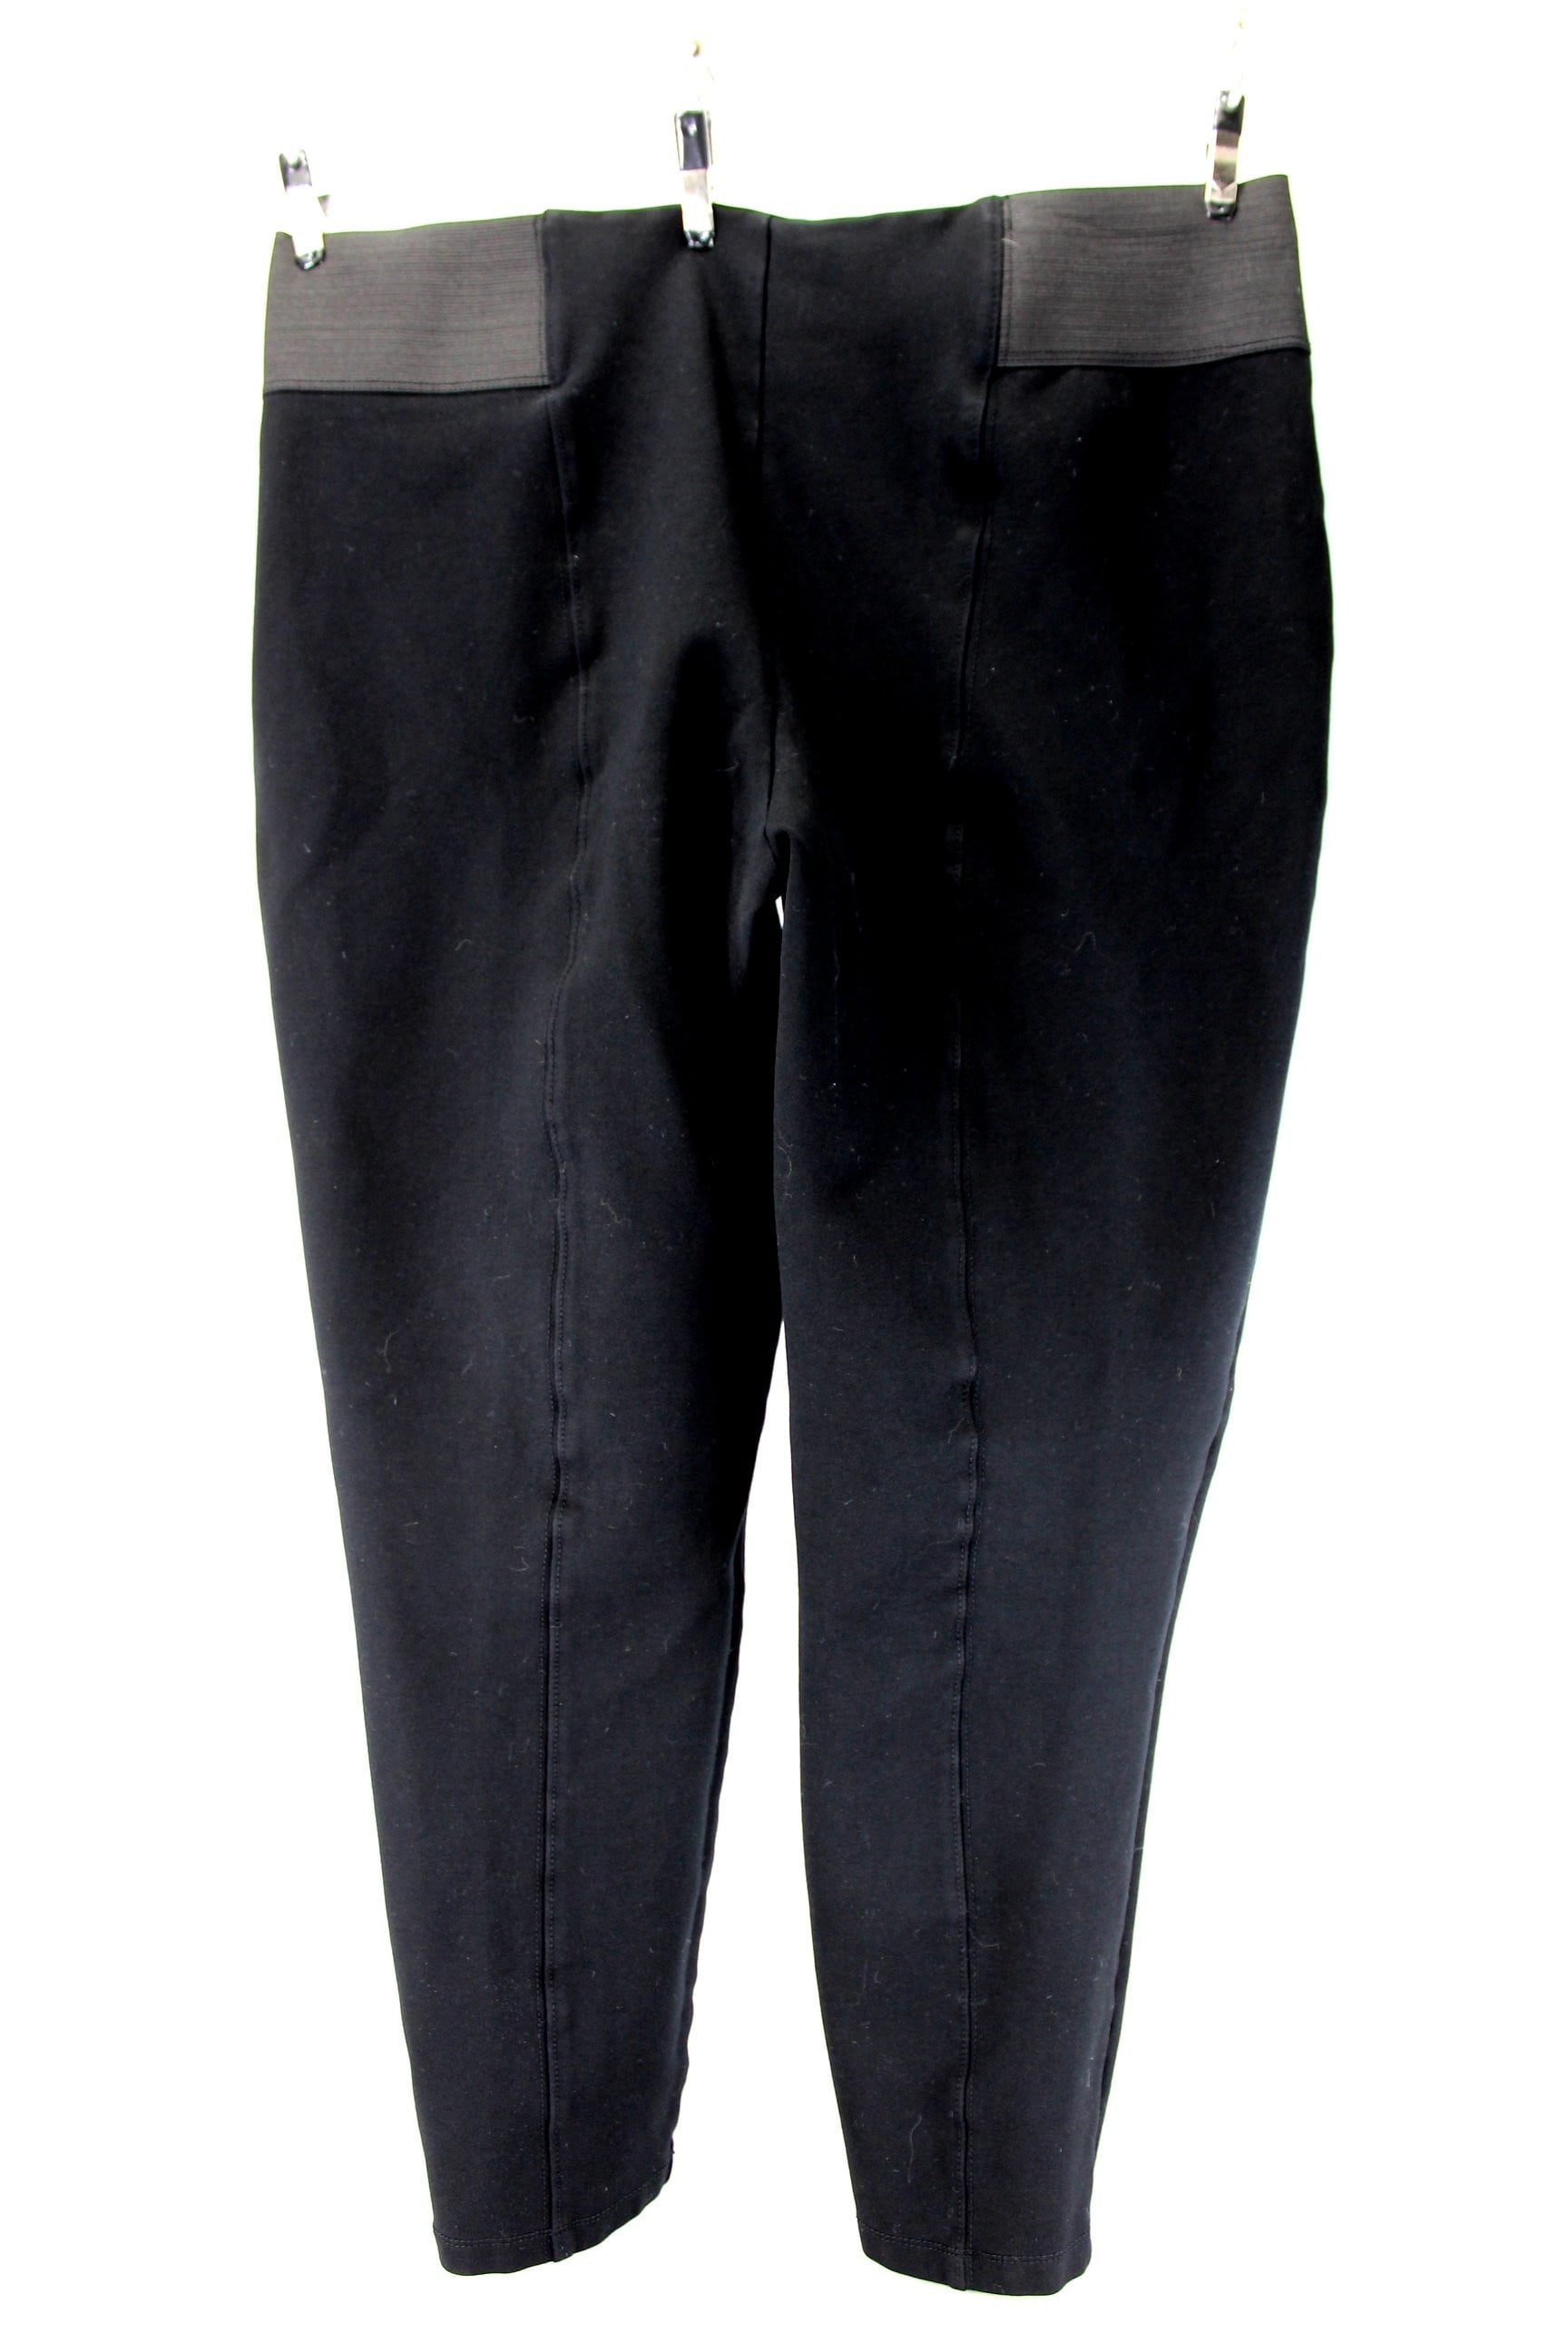  Rayon Nylon Spandex Pants